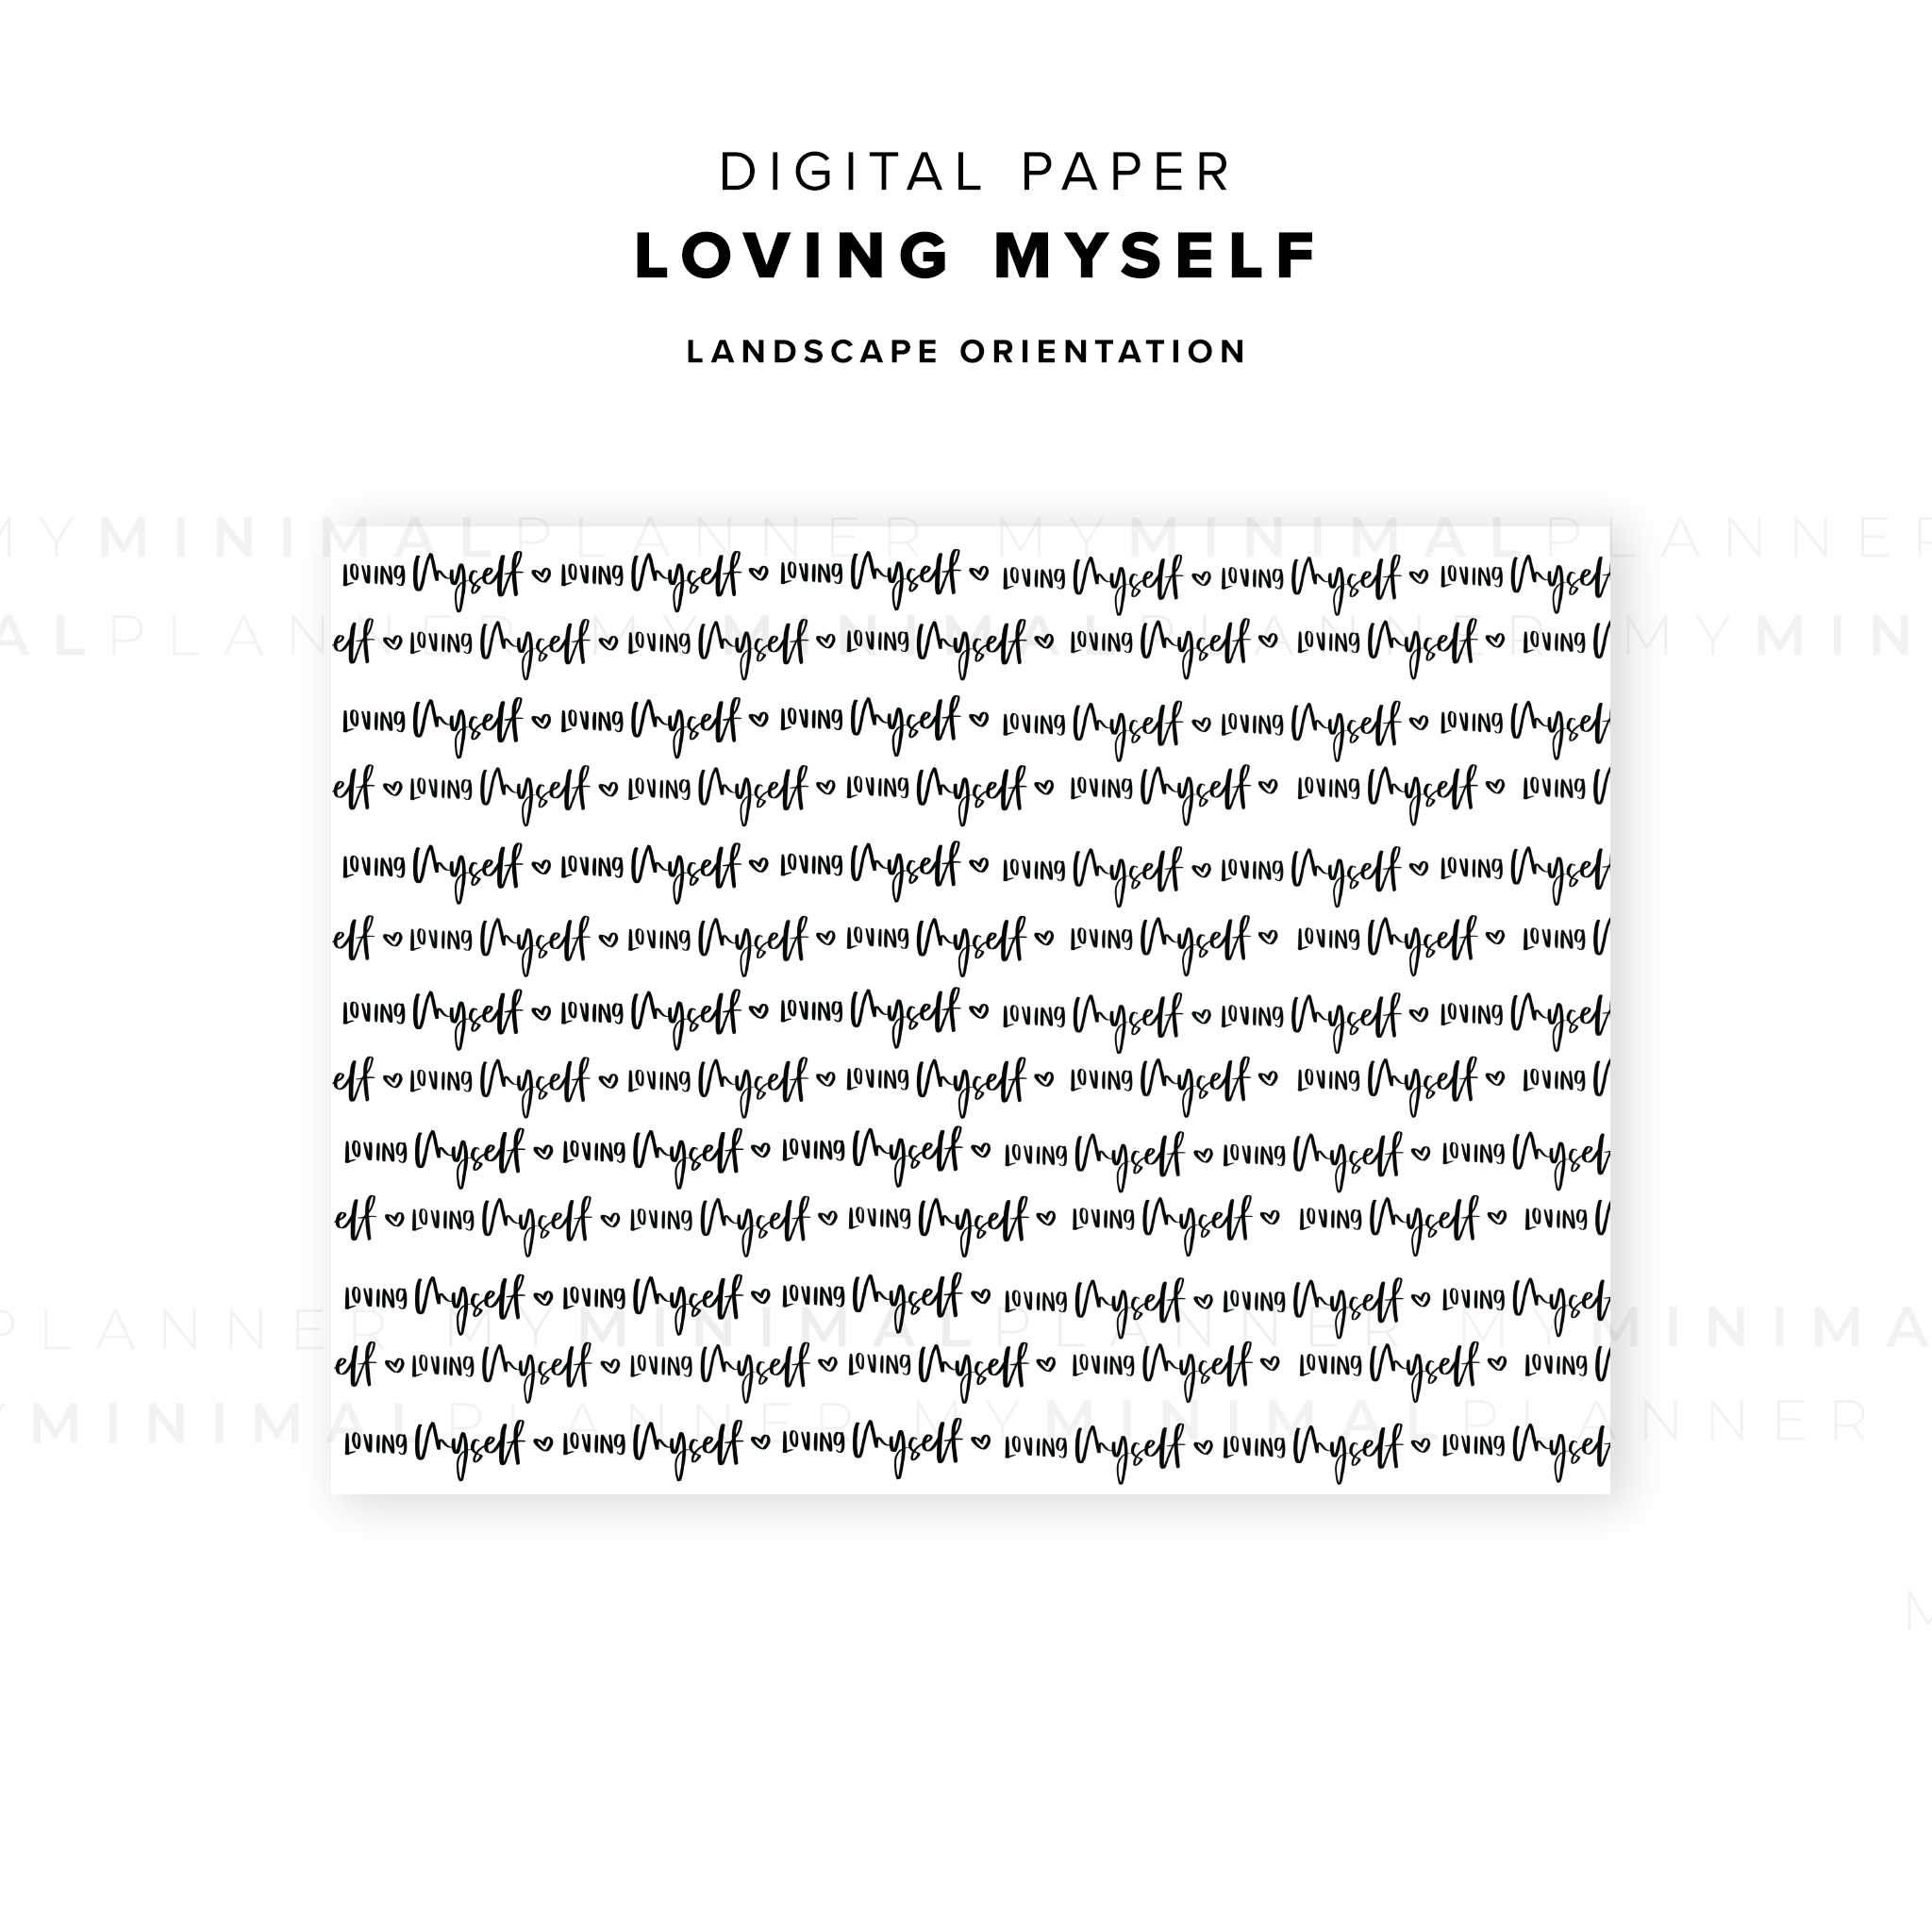 DP02 - Loving Myself - Digital Paper